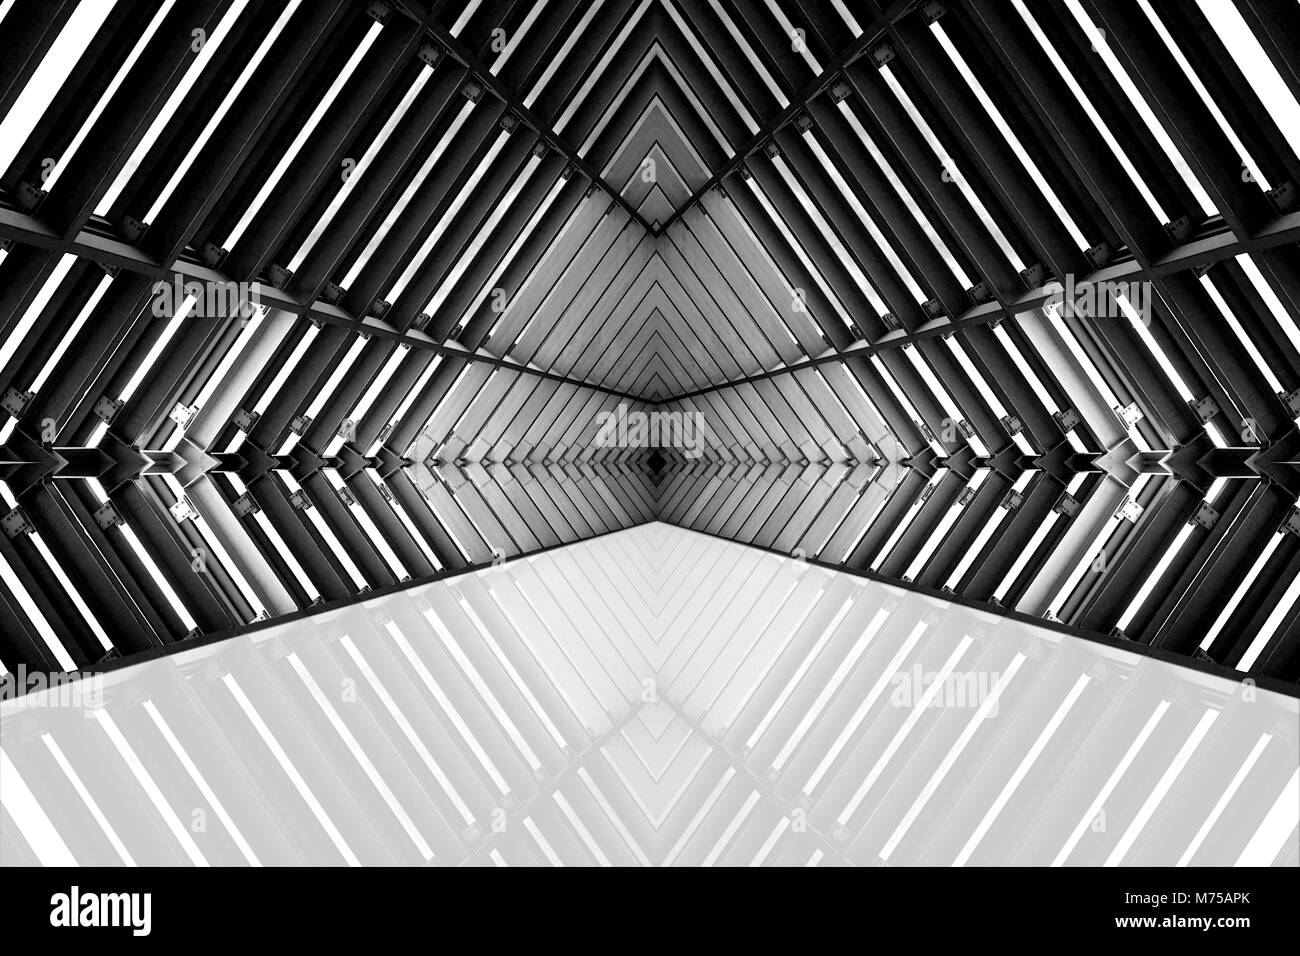 Gestaltung von Architektur Metall ähnliche Struktur Raumschiff Interieur. Abstrakte moderne Architektur Schwarzweiß-Foto. Stockfoto